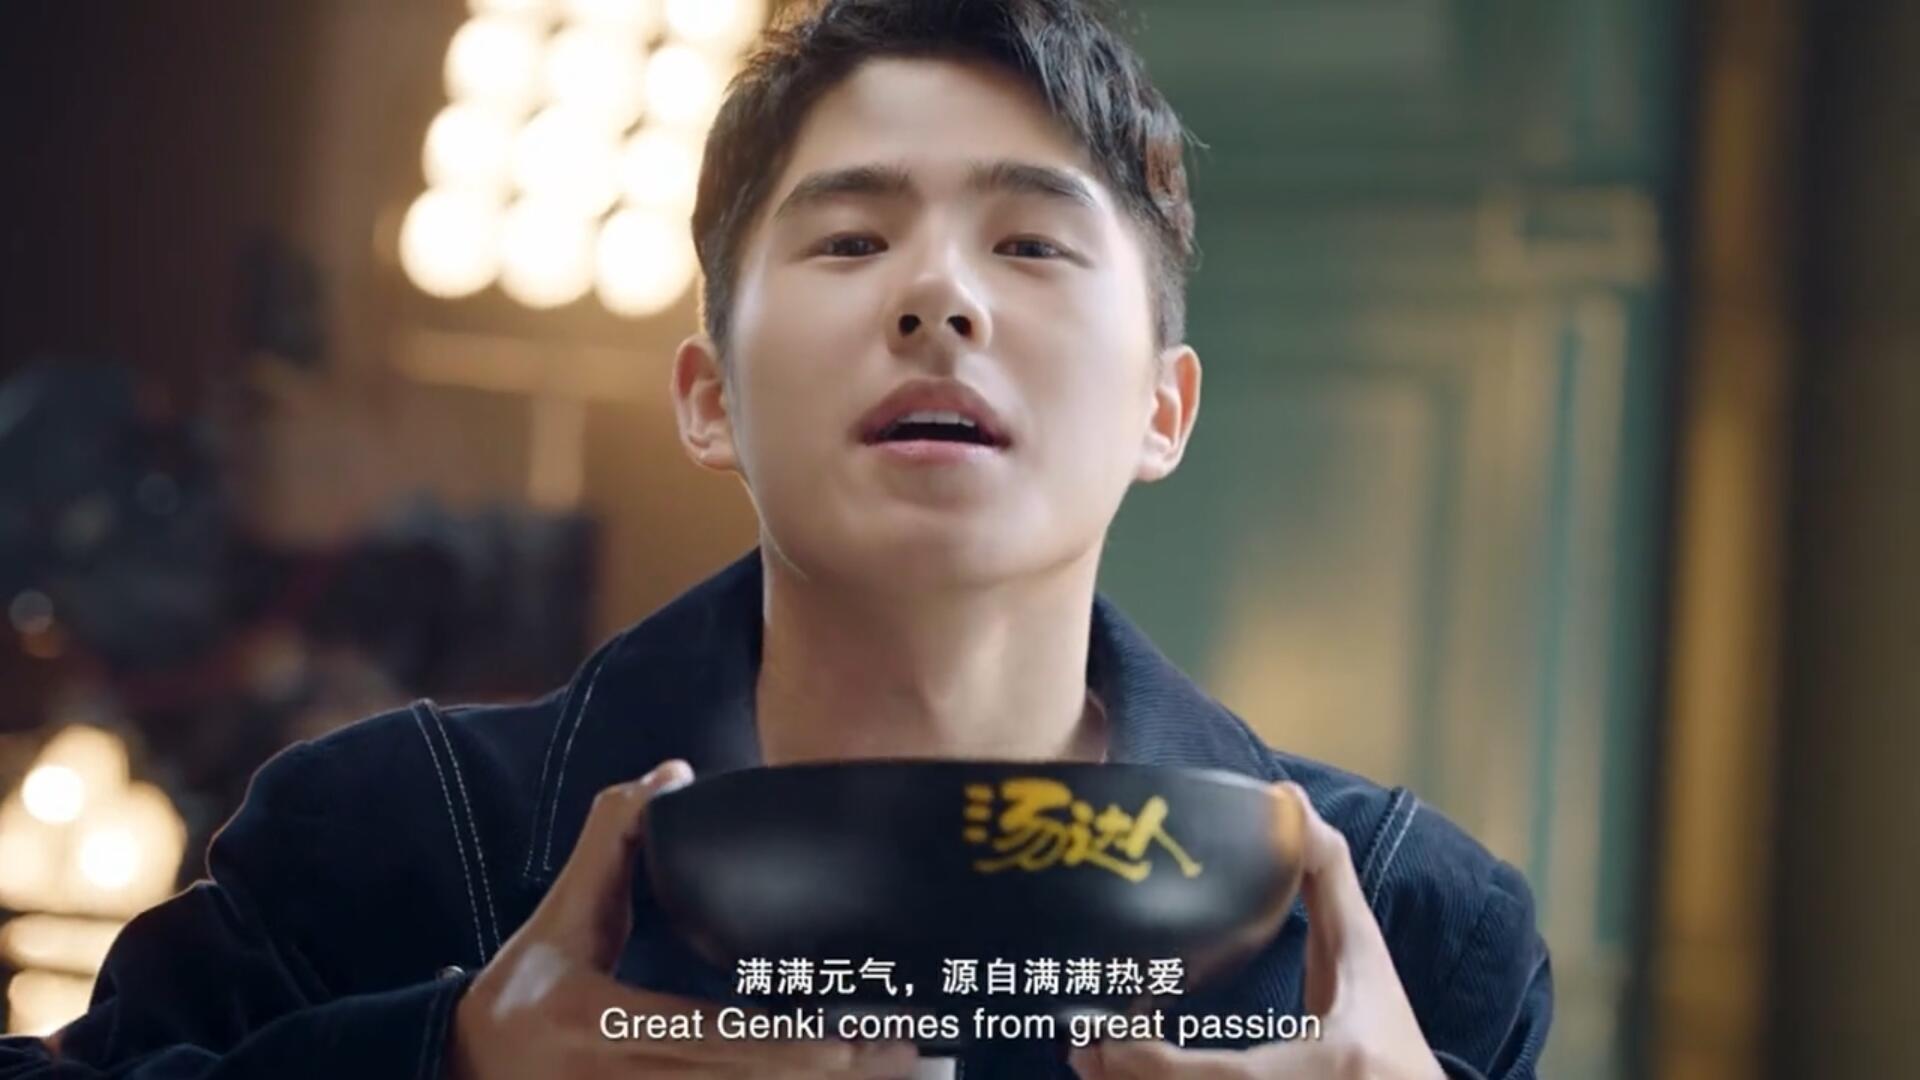 《刘昊然的元气之路》统一汤达人全新品牌宣传片